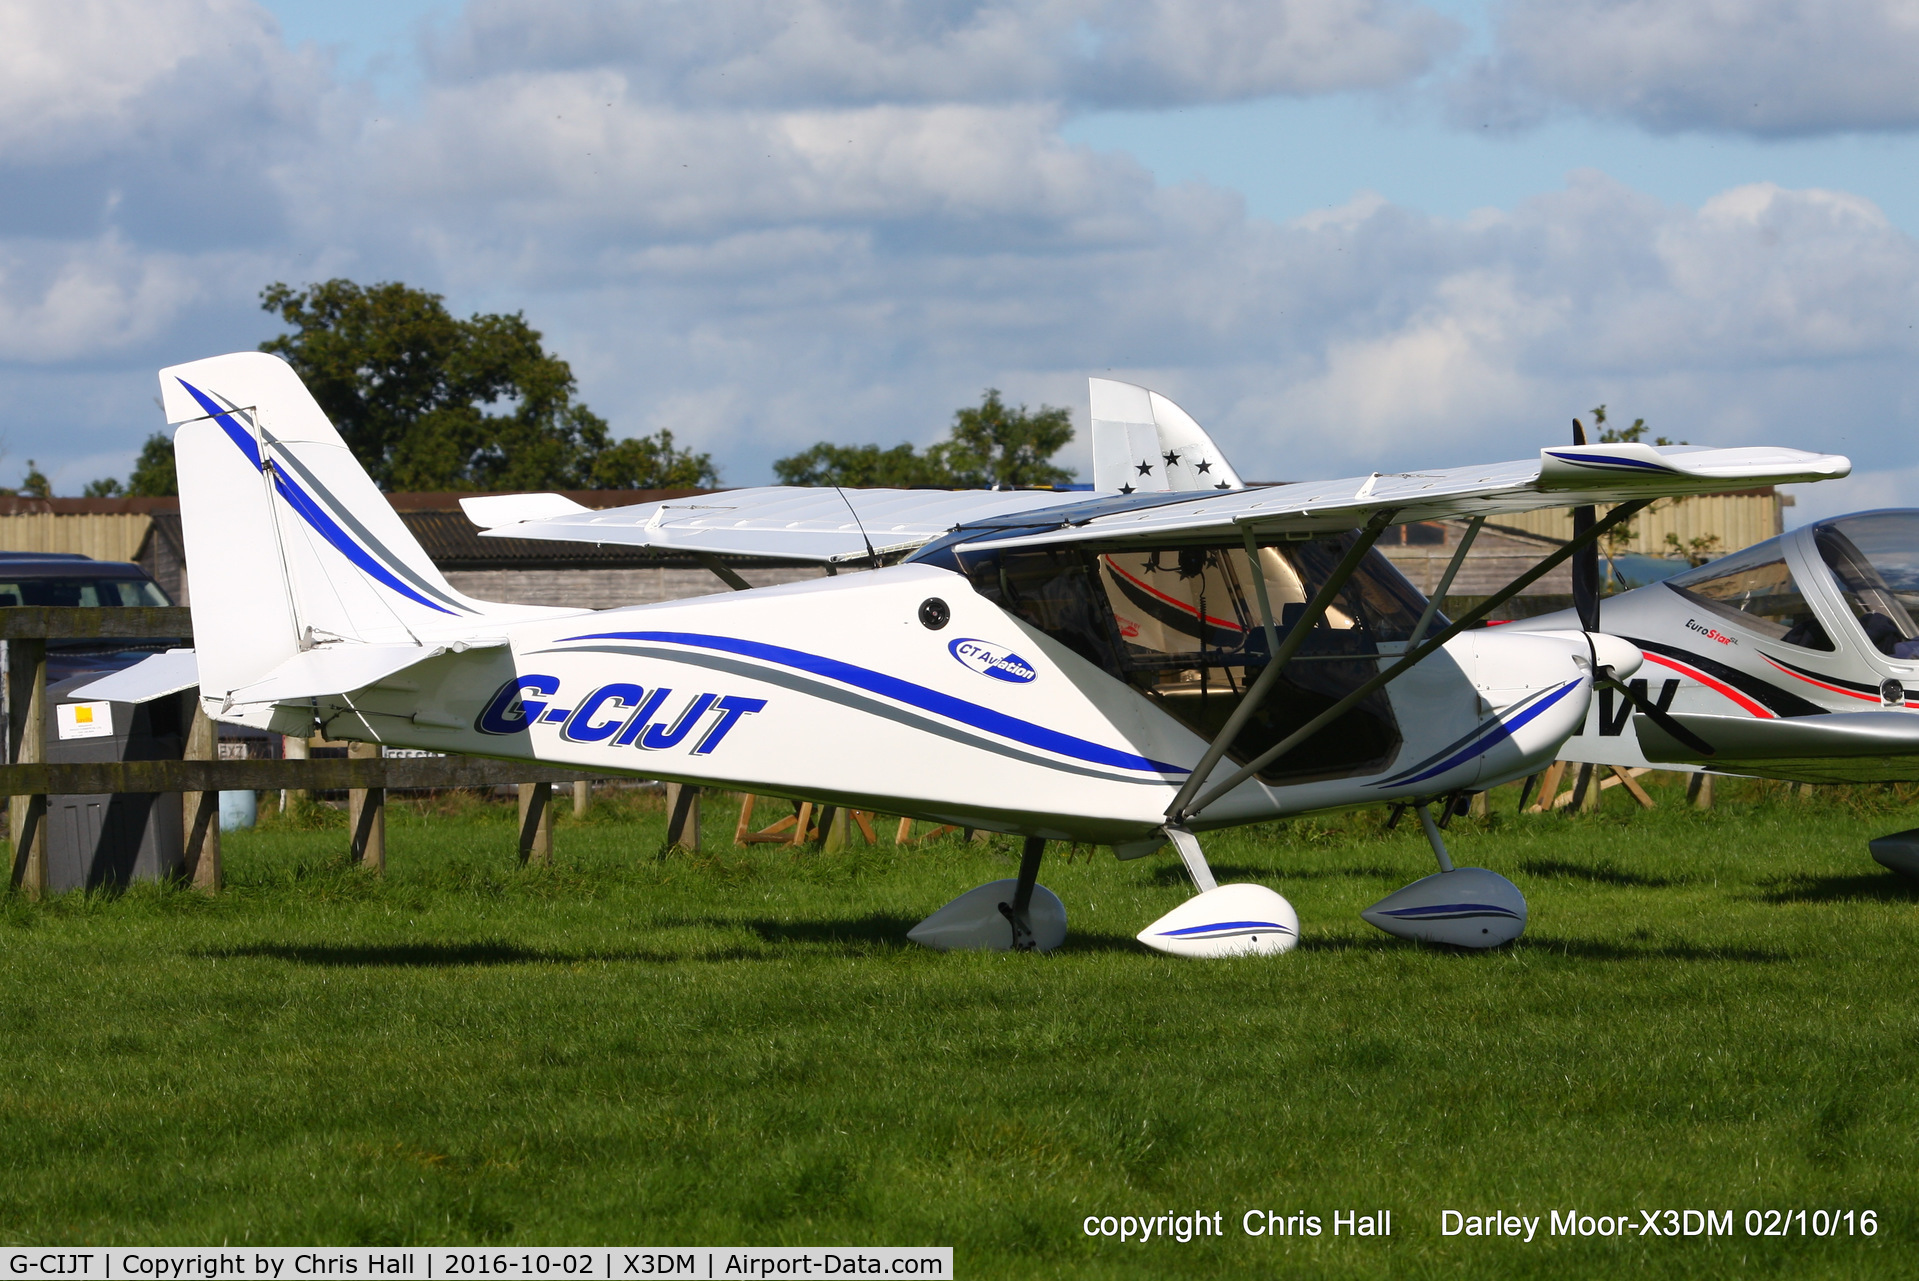 G-CIJT, 2014 Best Off Skyranger Ninja 912S(1) C/N BMAA/HB/650, at Darley Moor Airfield